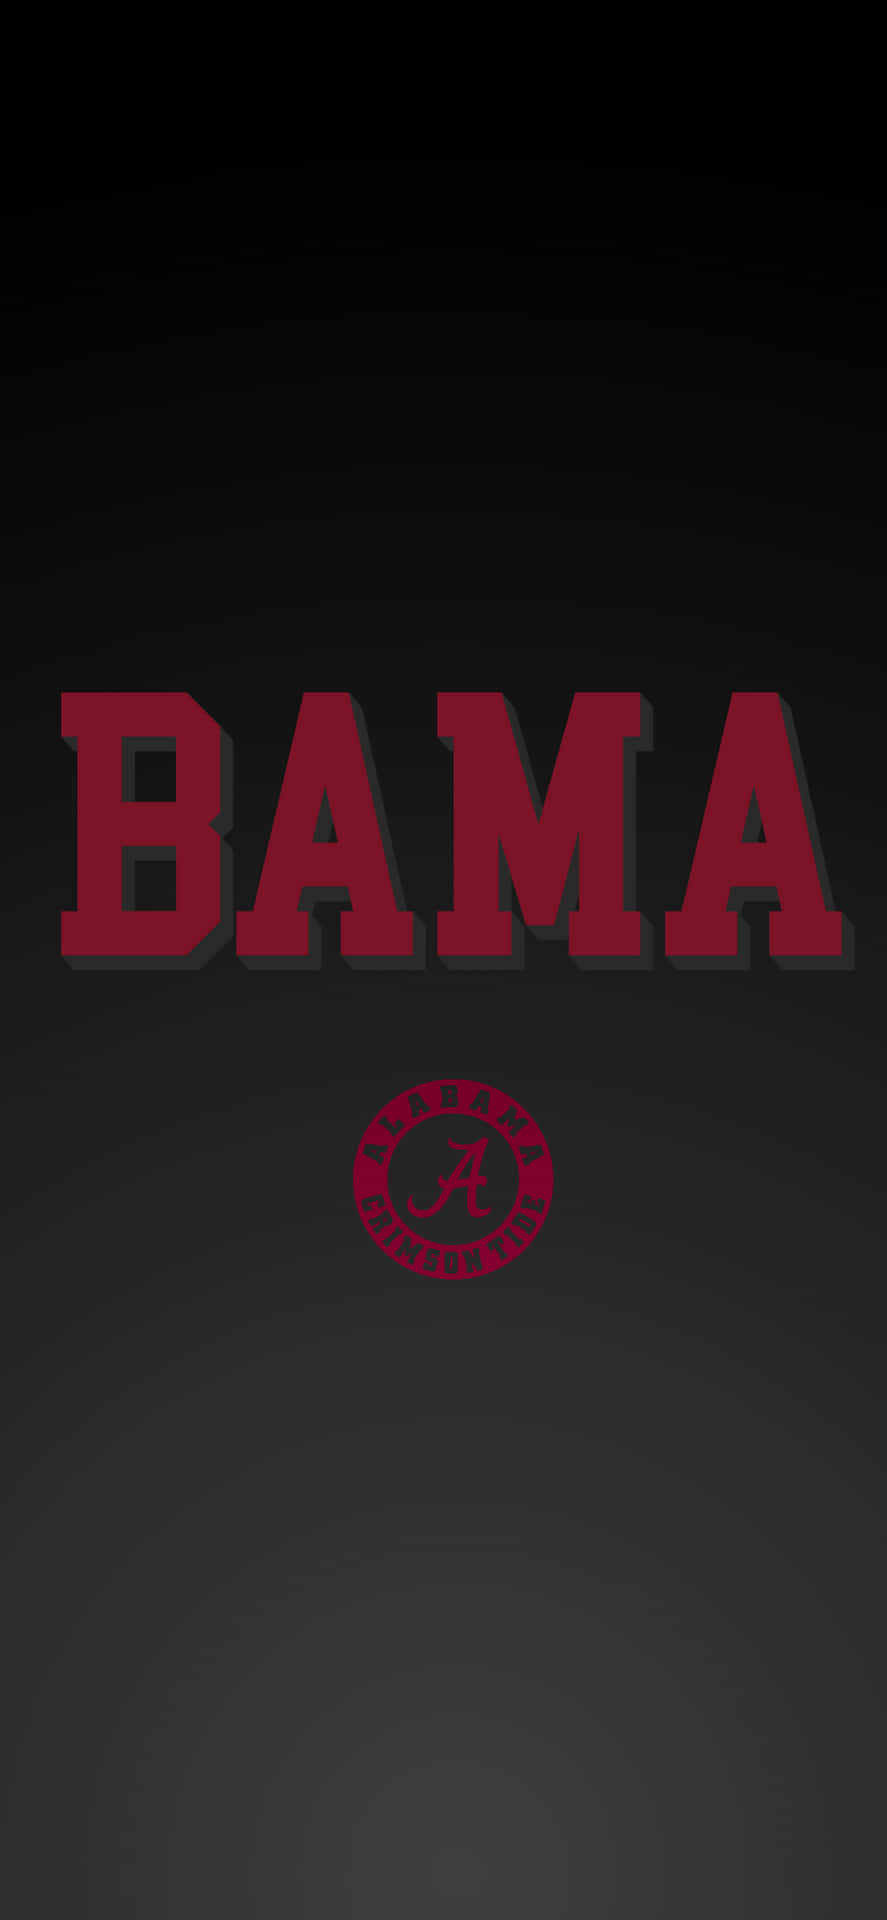 Det officielle logo, der repræsenterer University of Alabama's fodboldhold Wallpaper